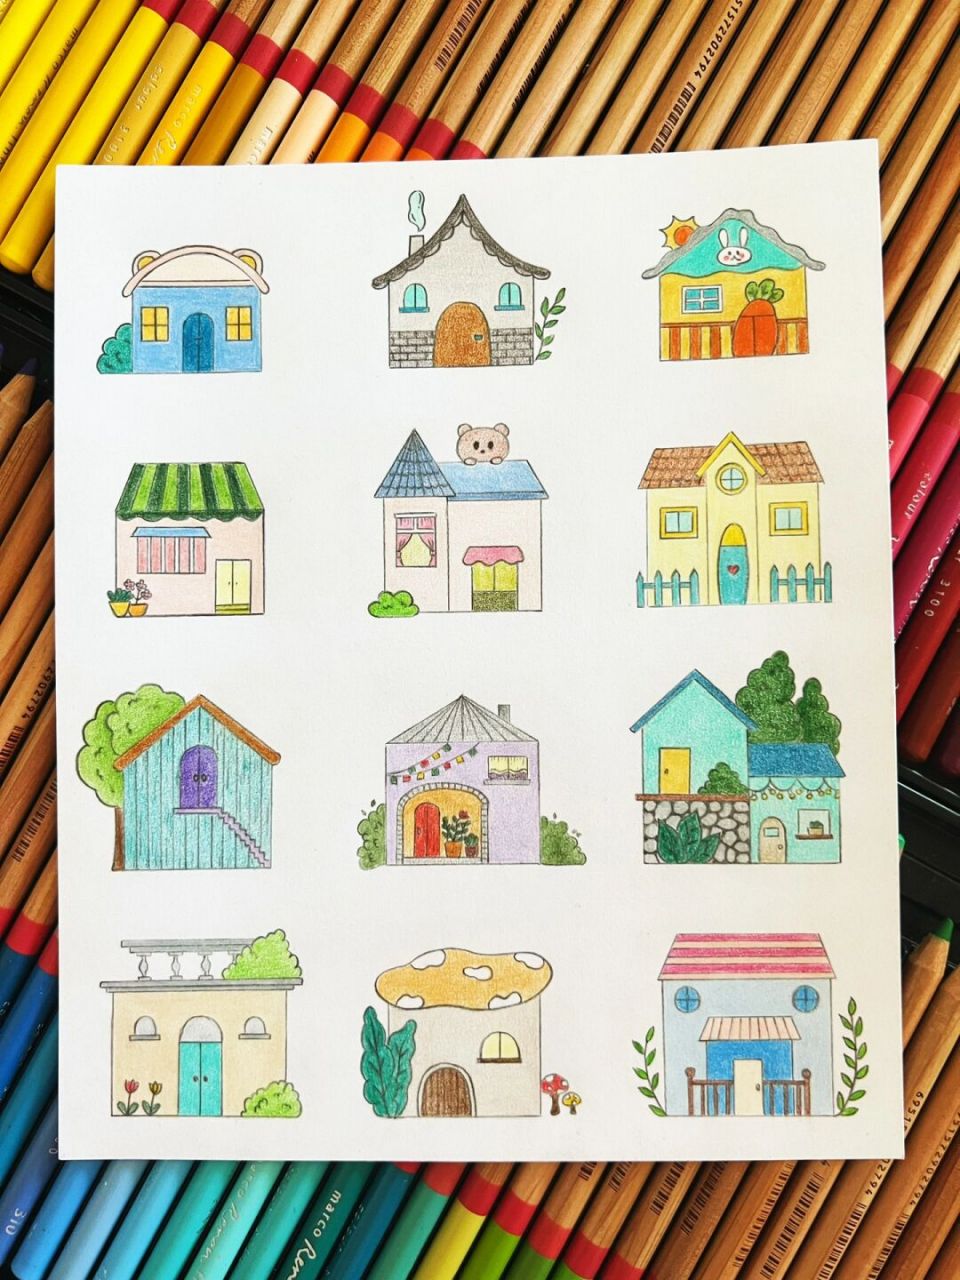 小房子画法图片